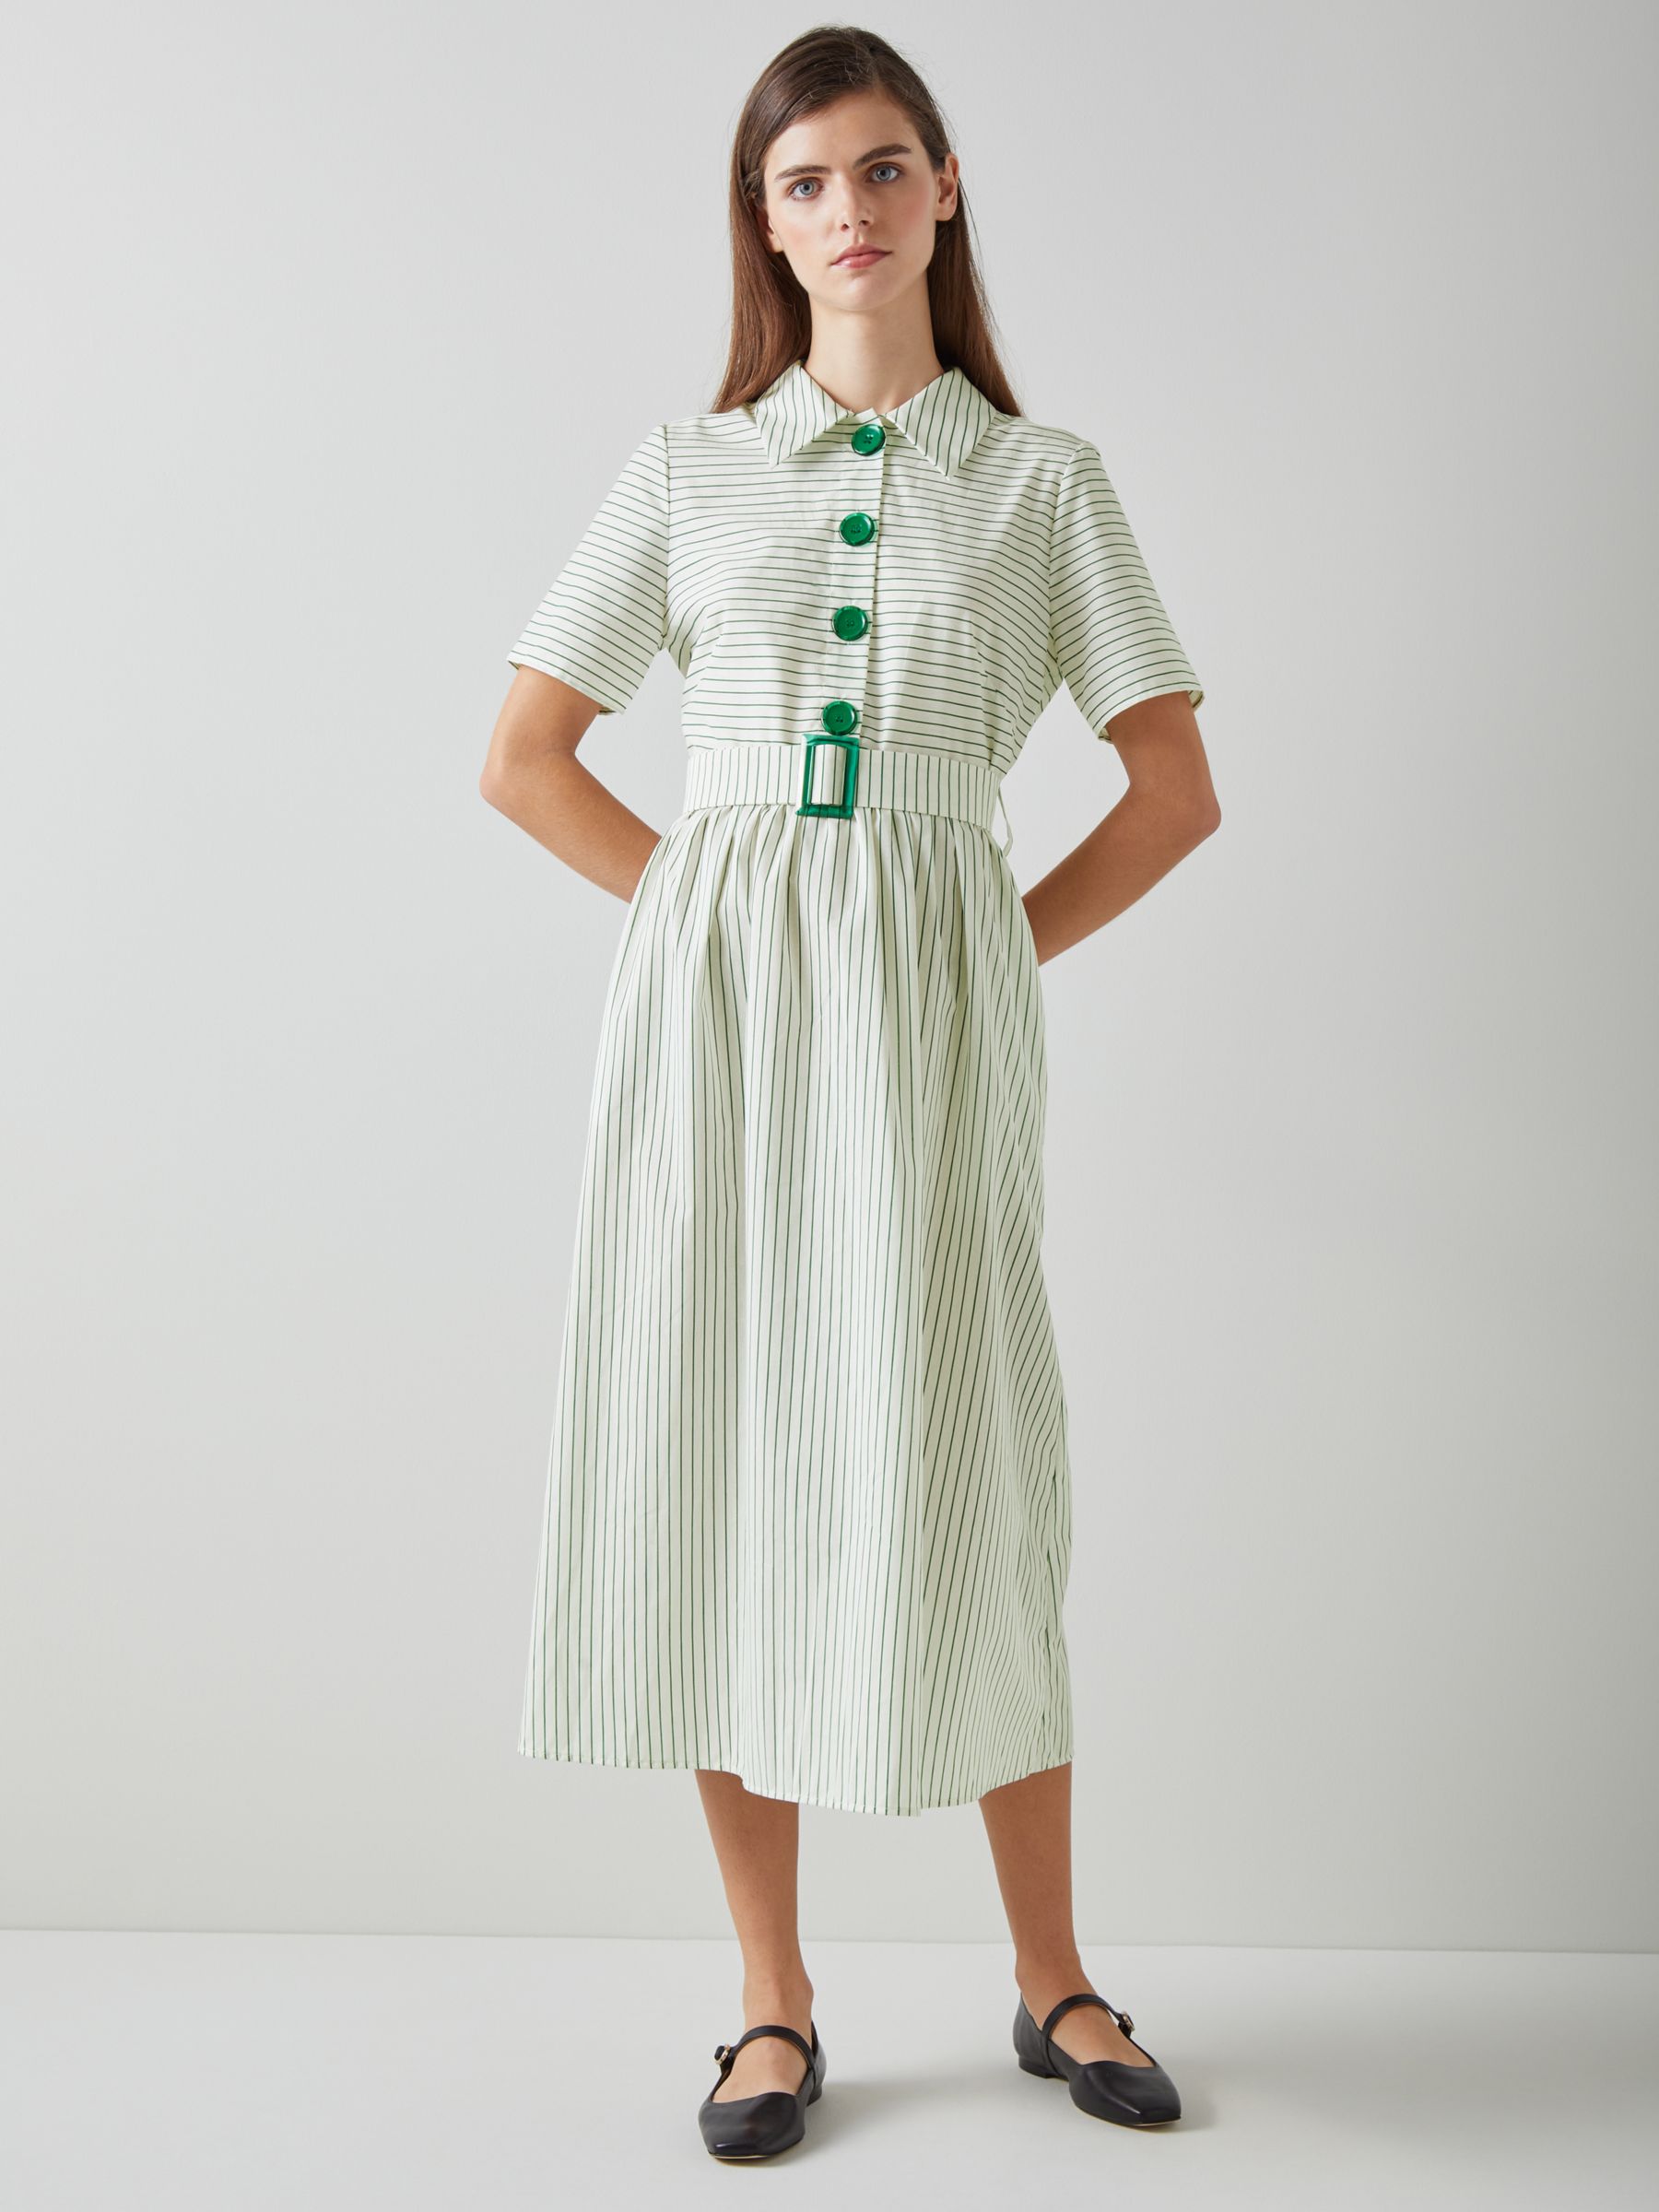 L.K.Bennett Bextor Stripe Shirt Dress, Cream/Green, 6